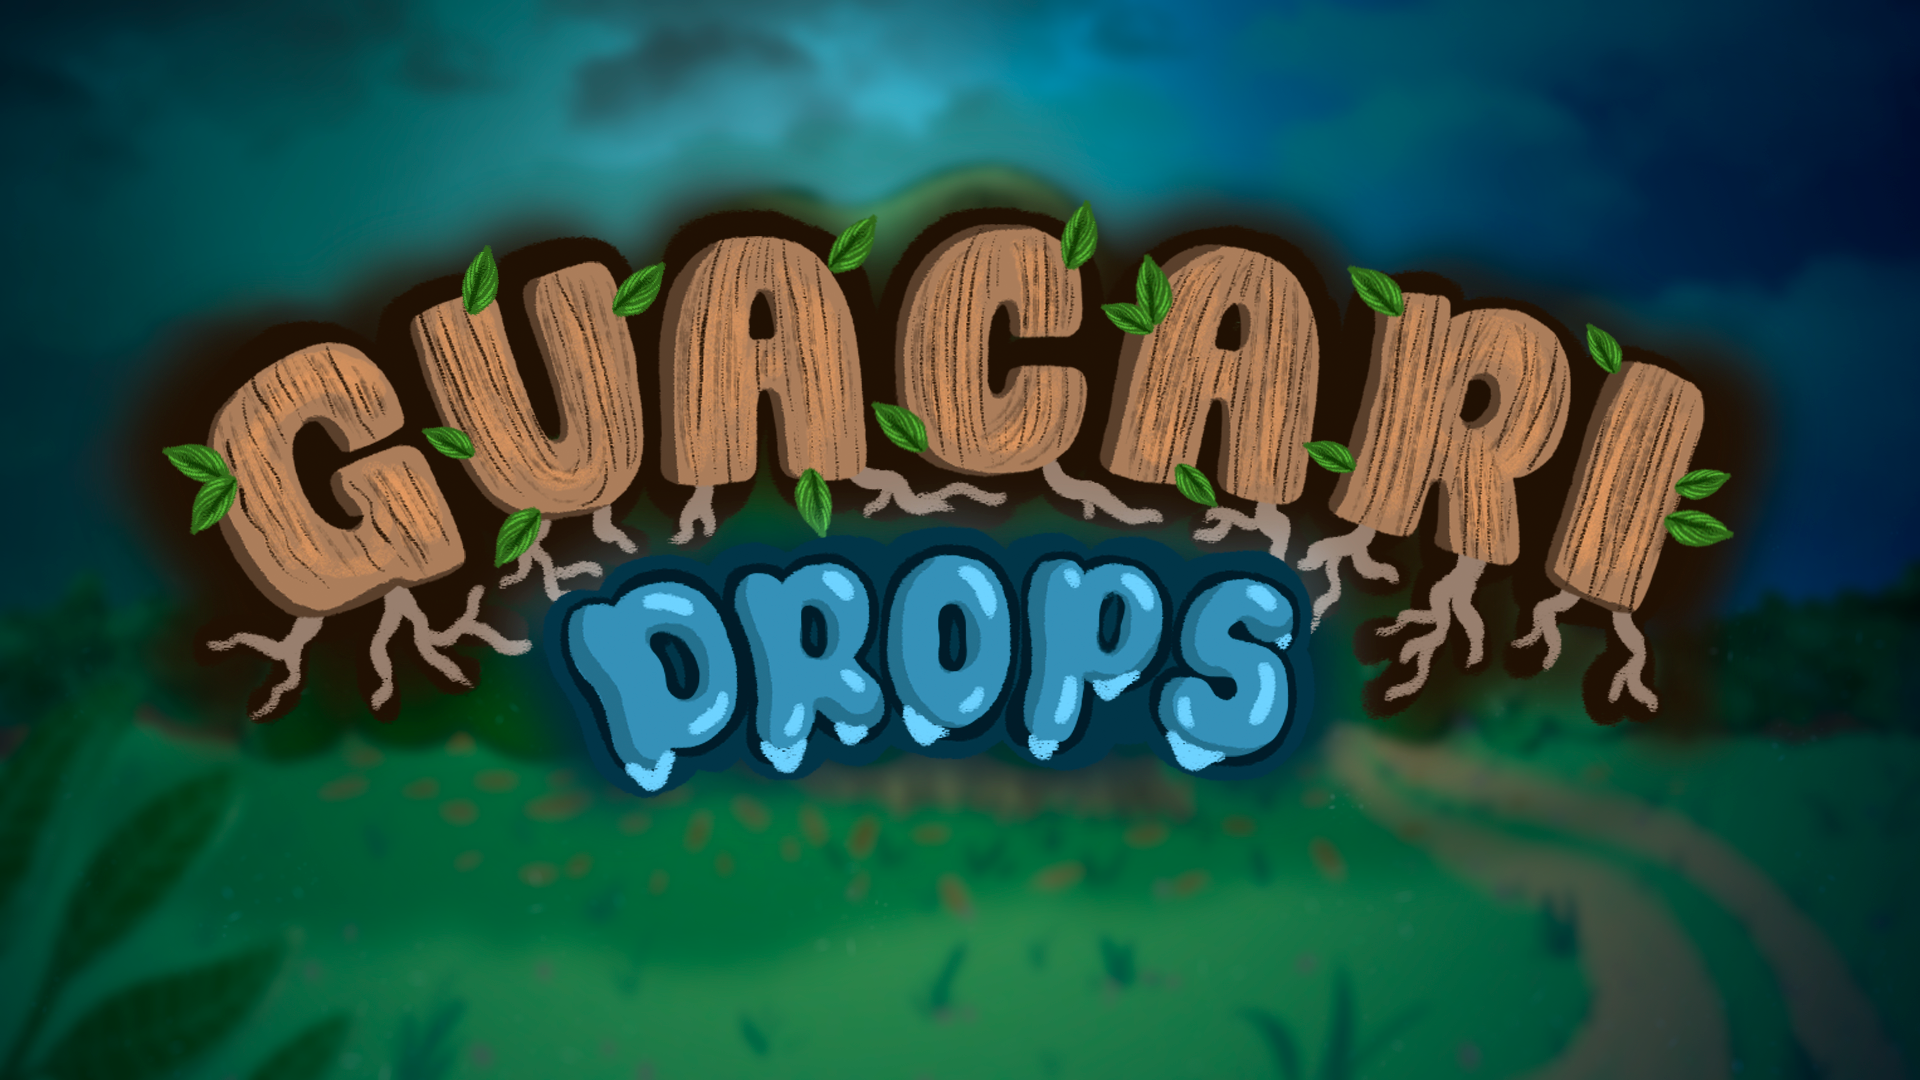 Guacari Drops